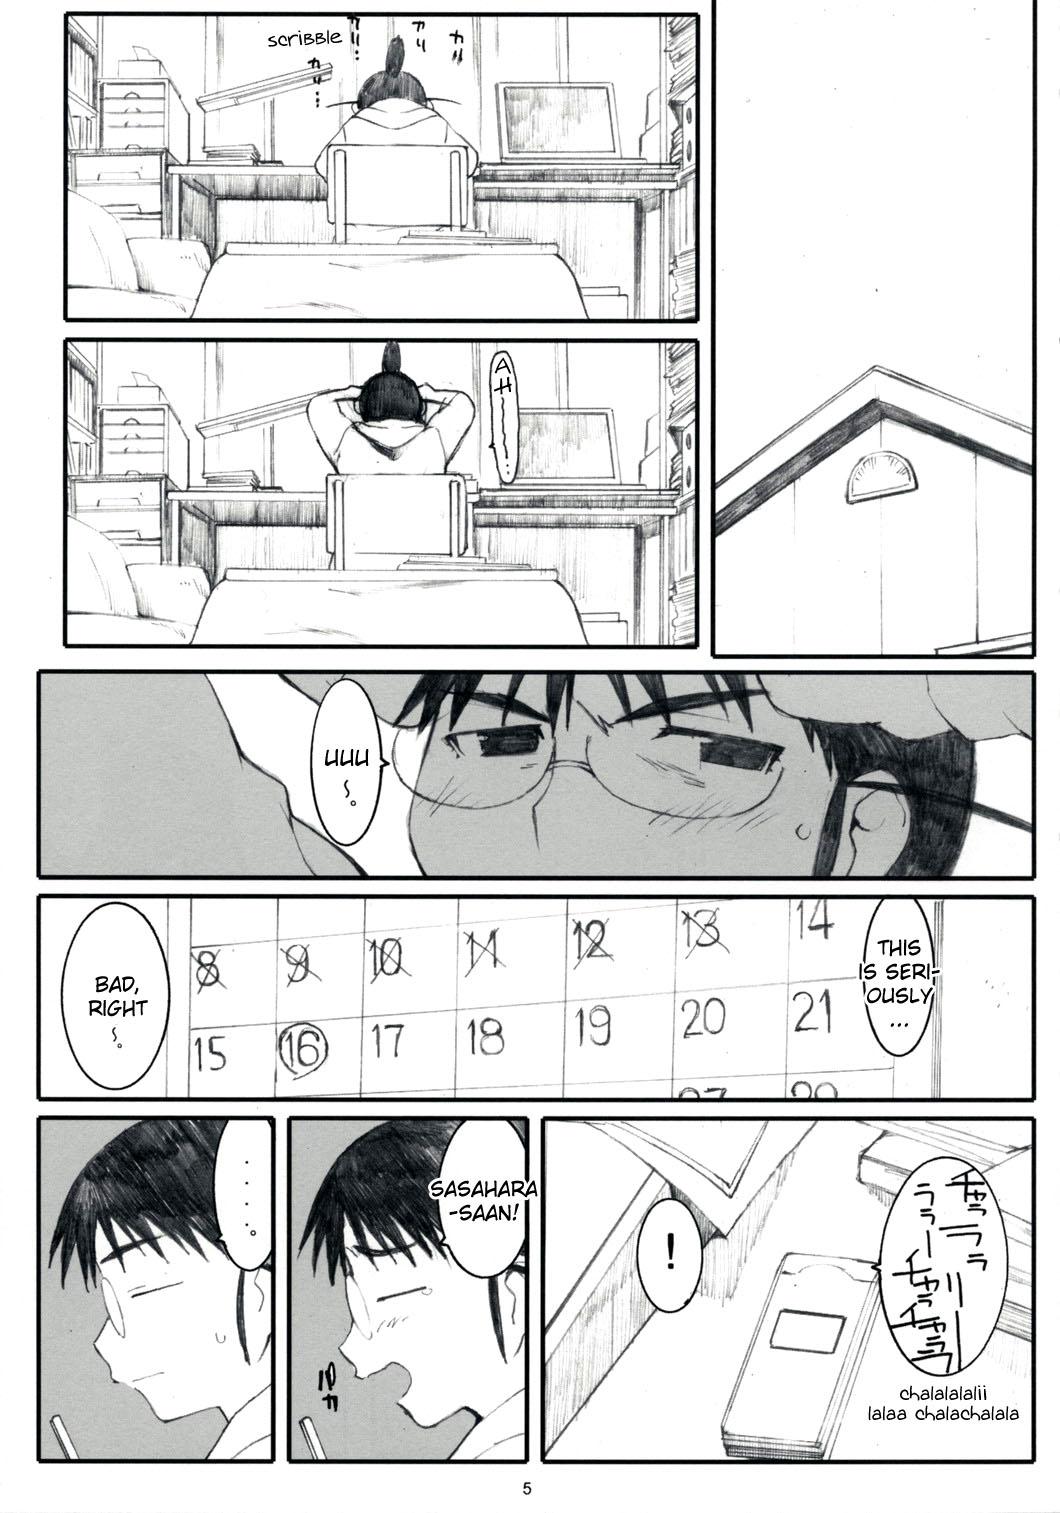 Piroca Ogi-Ana 2 - Genshiken English - Page 4